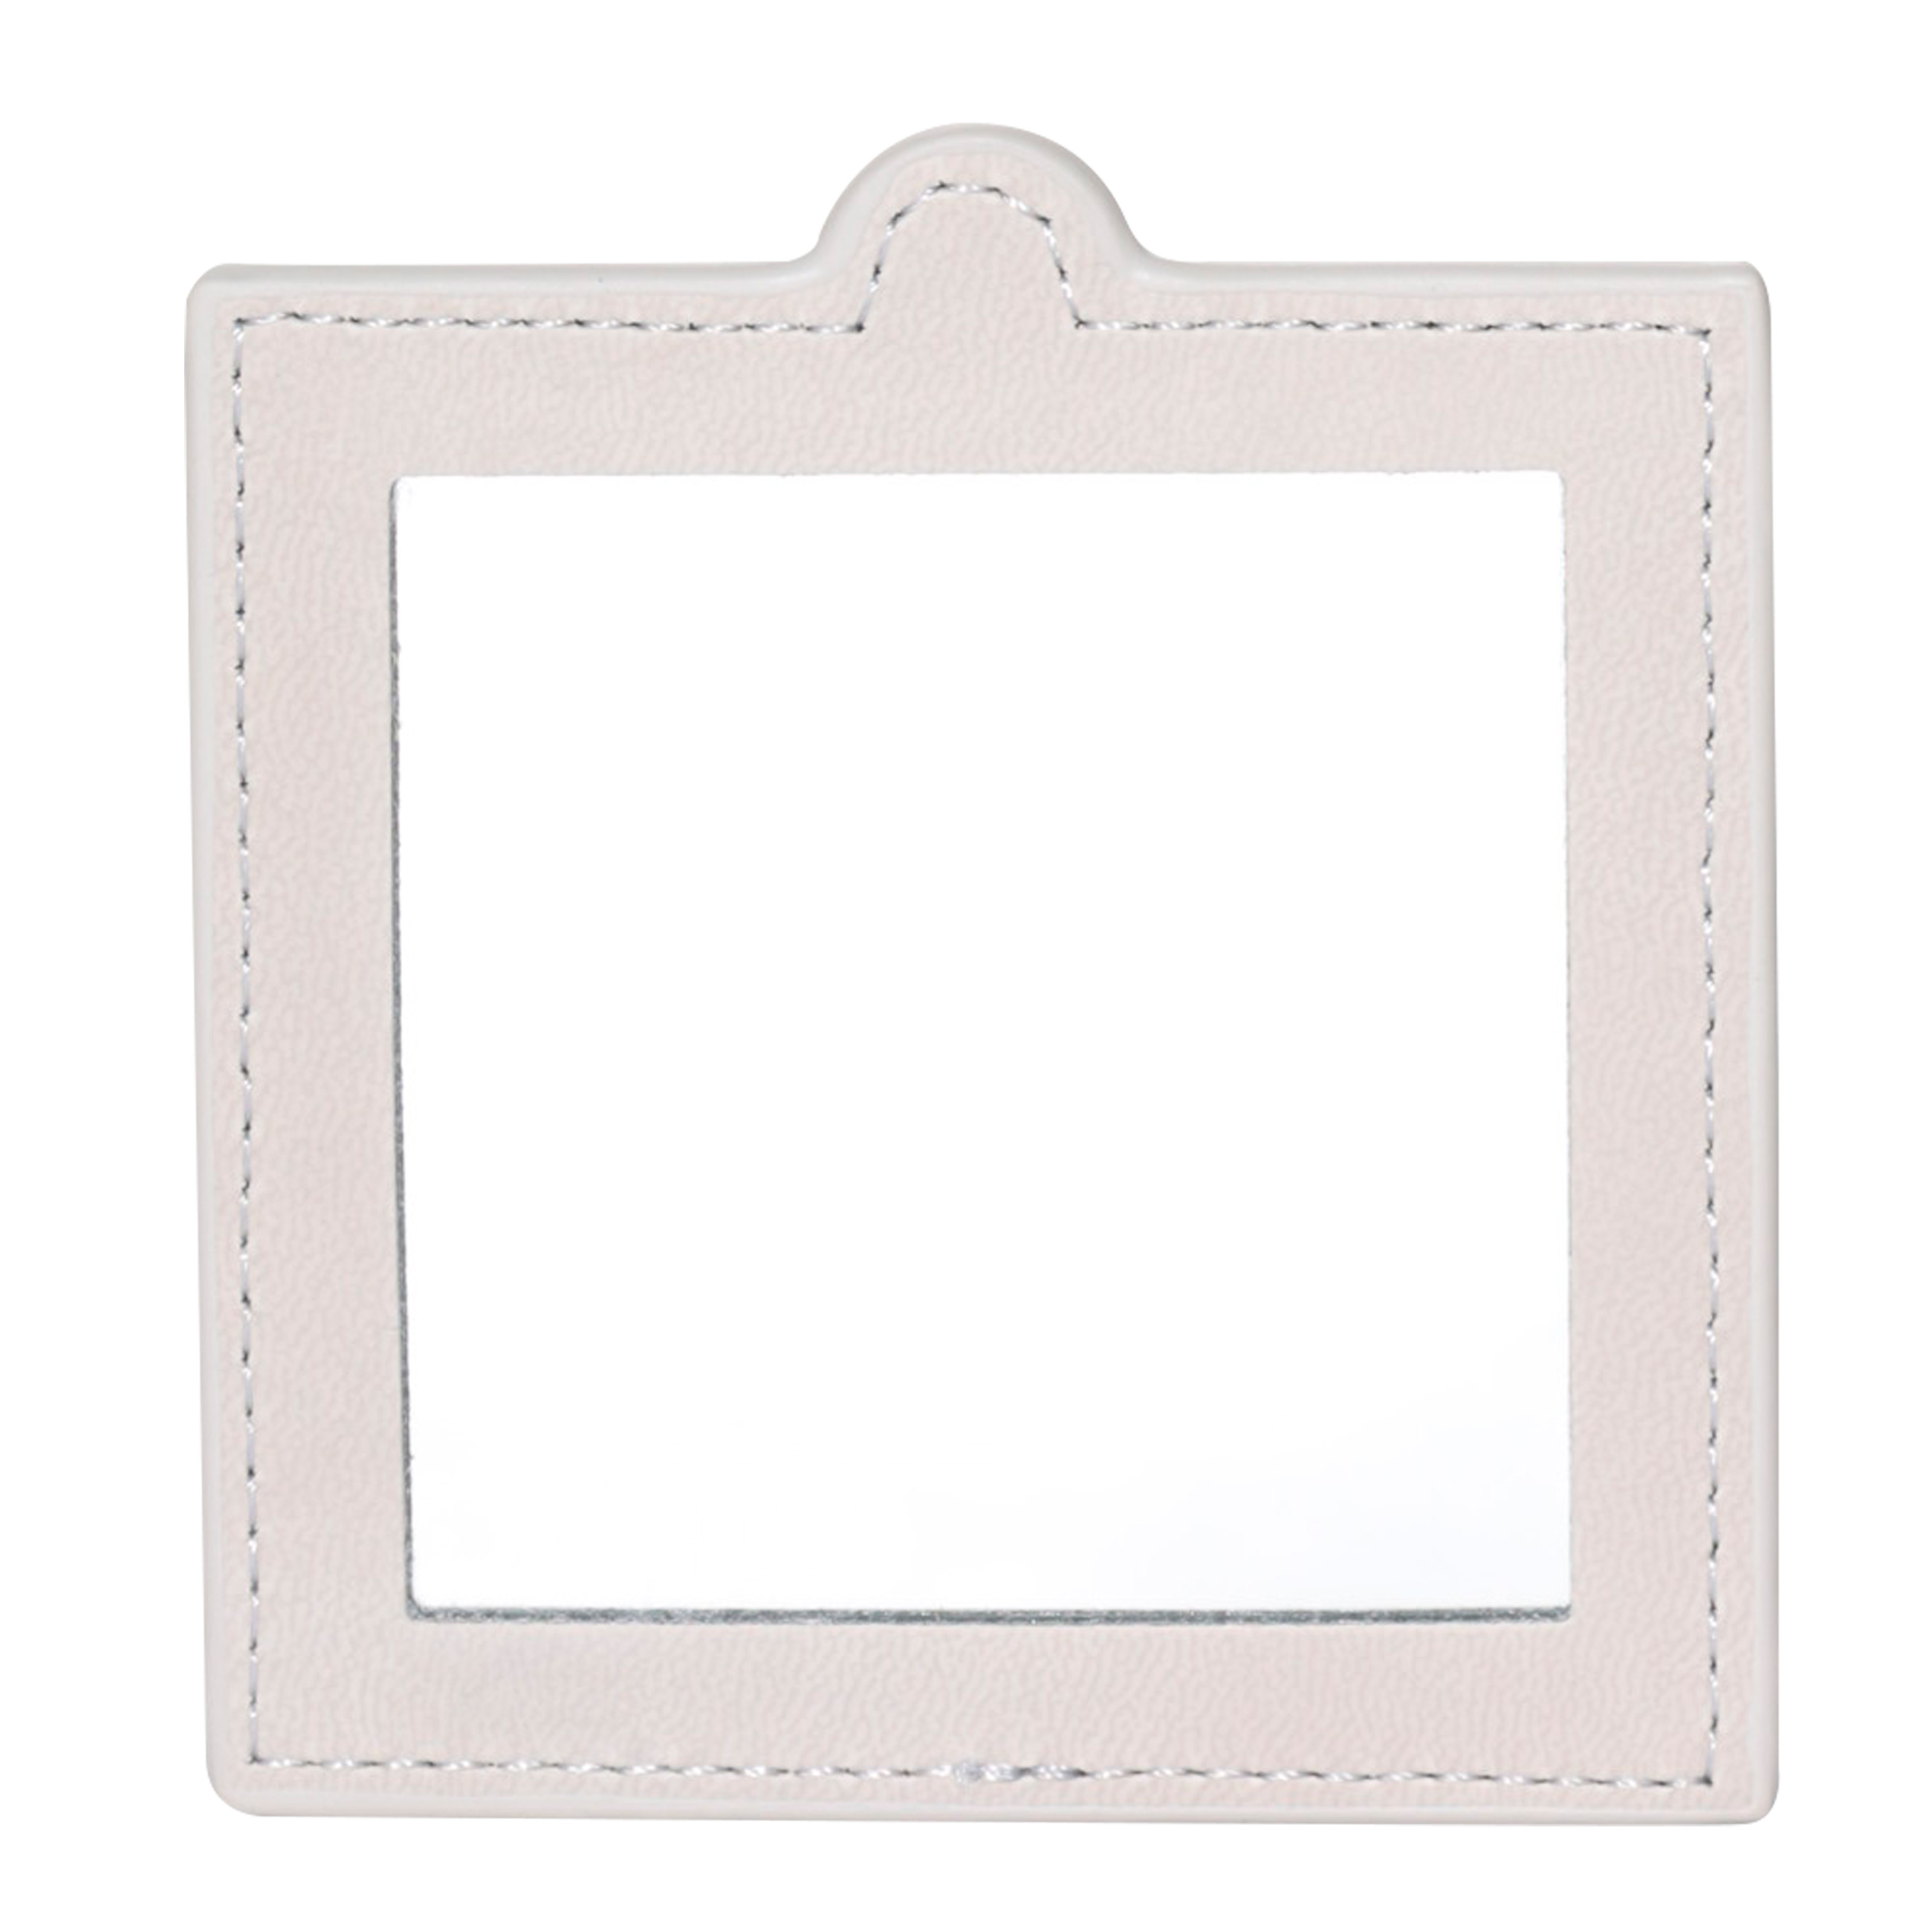 Pocket mirror, 10x9 cm, in case, polyurethane, gray, Memo изображение № 4